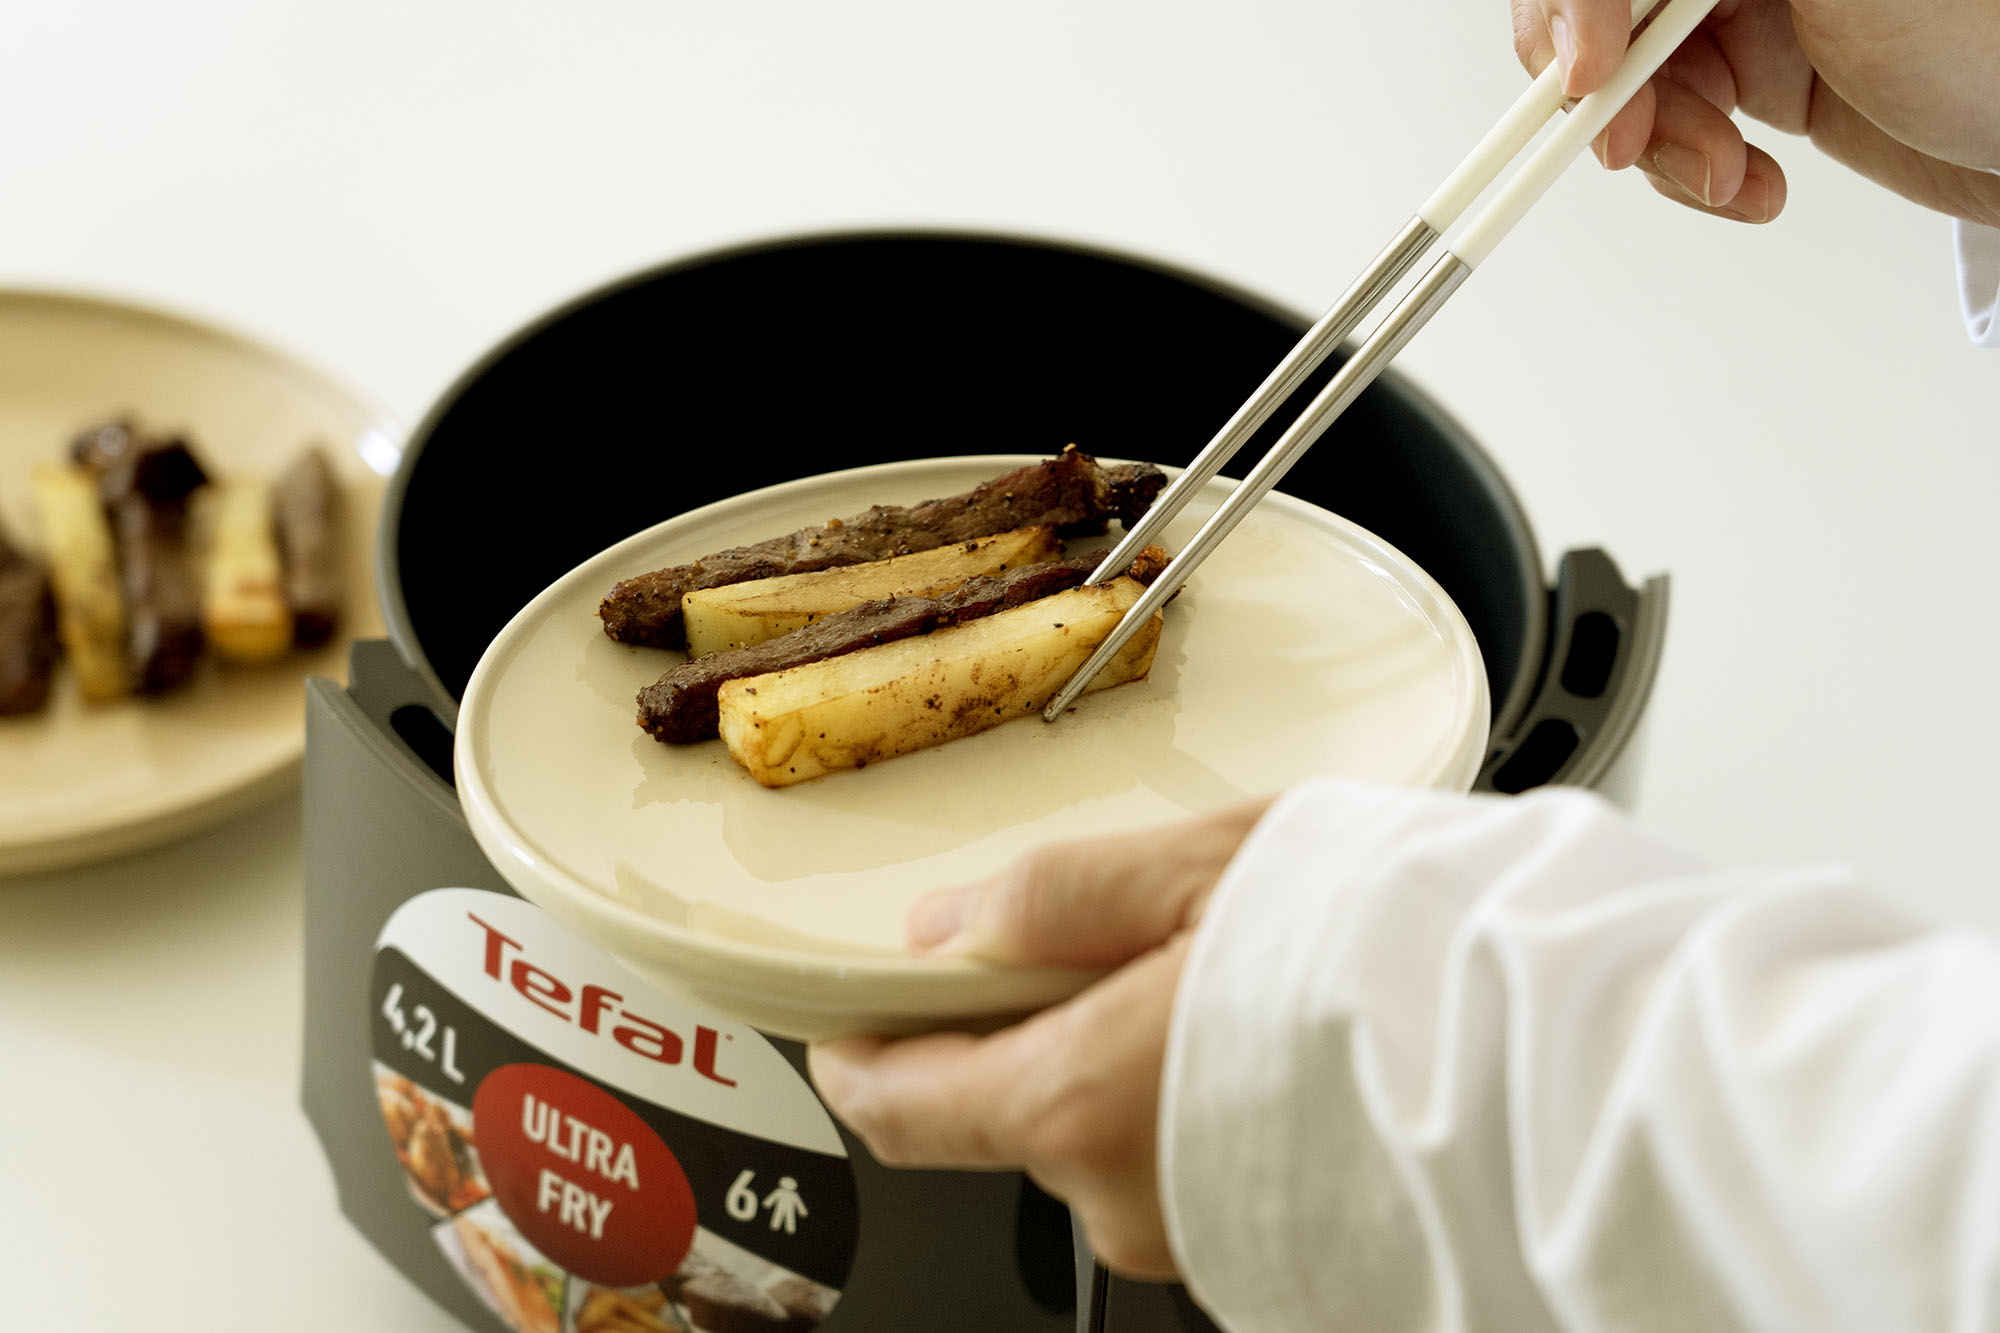 Tefal Ultra Fry 法國特福酥脆氣炸鍋｜是小資族小空間的料理救星，讓自煮超簡單、超方便、也超美味！